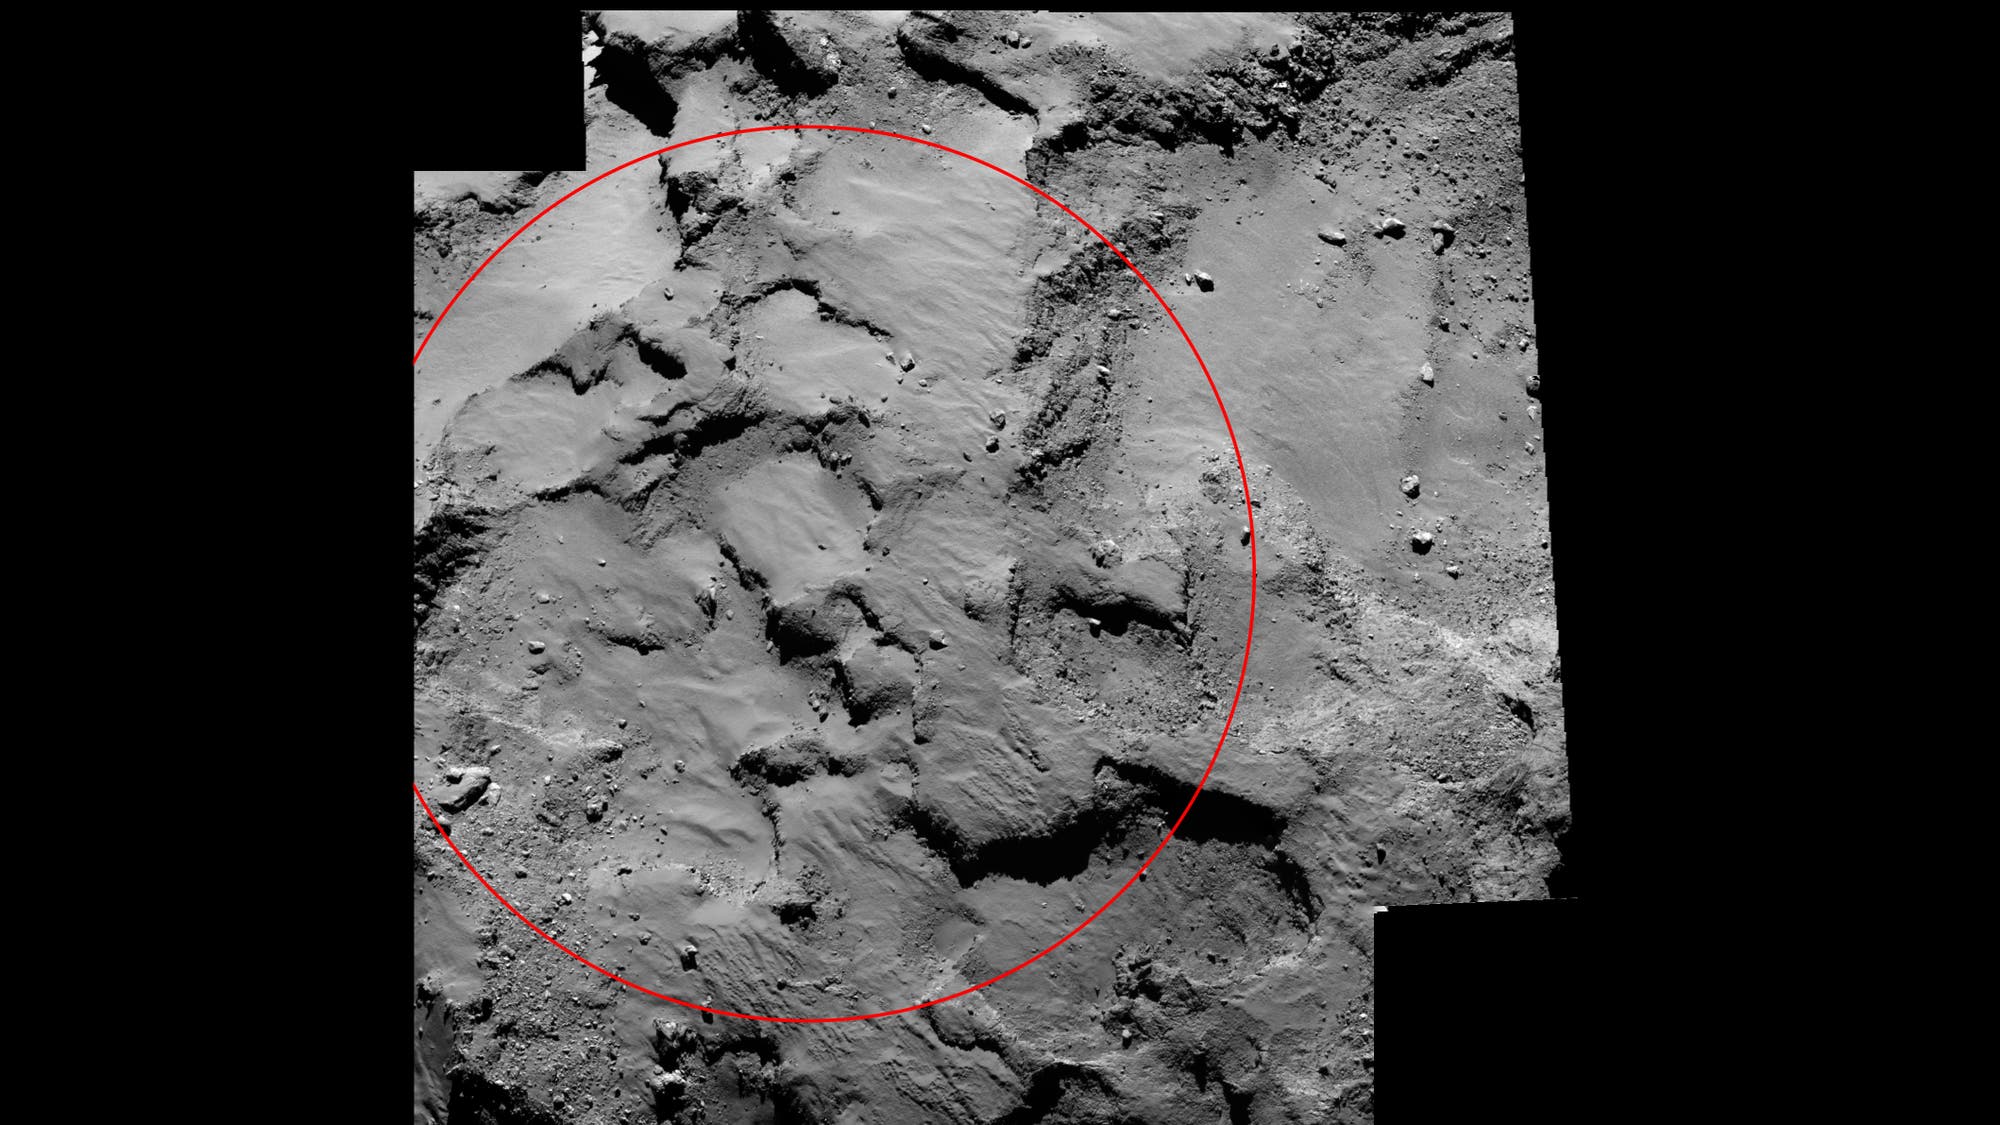 Der Landeplatz "J" auf dem Kometen Tschurjumow-Gerasimenko